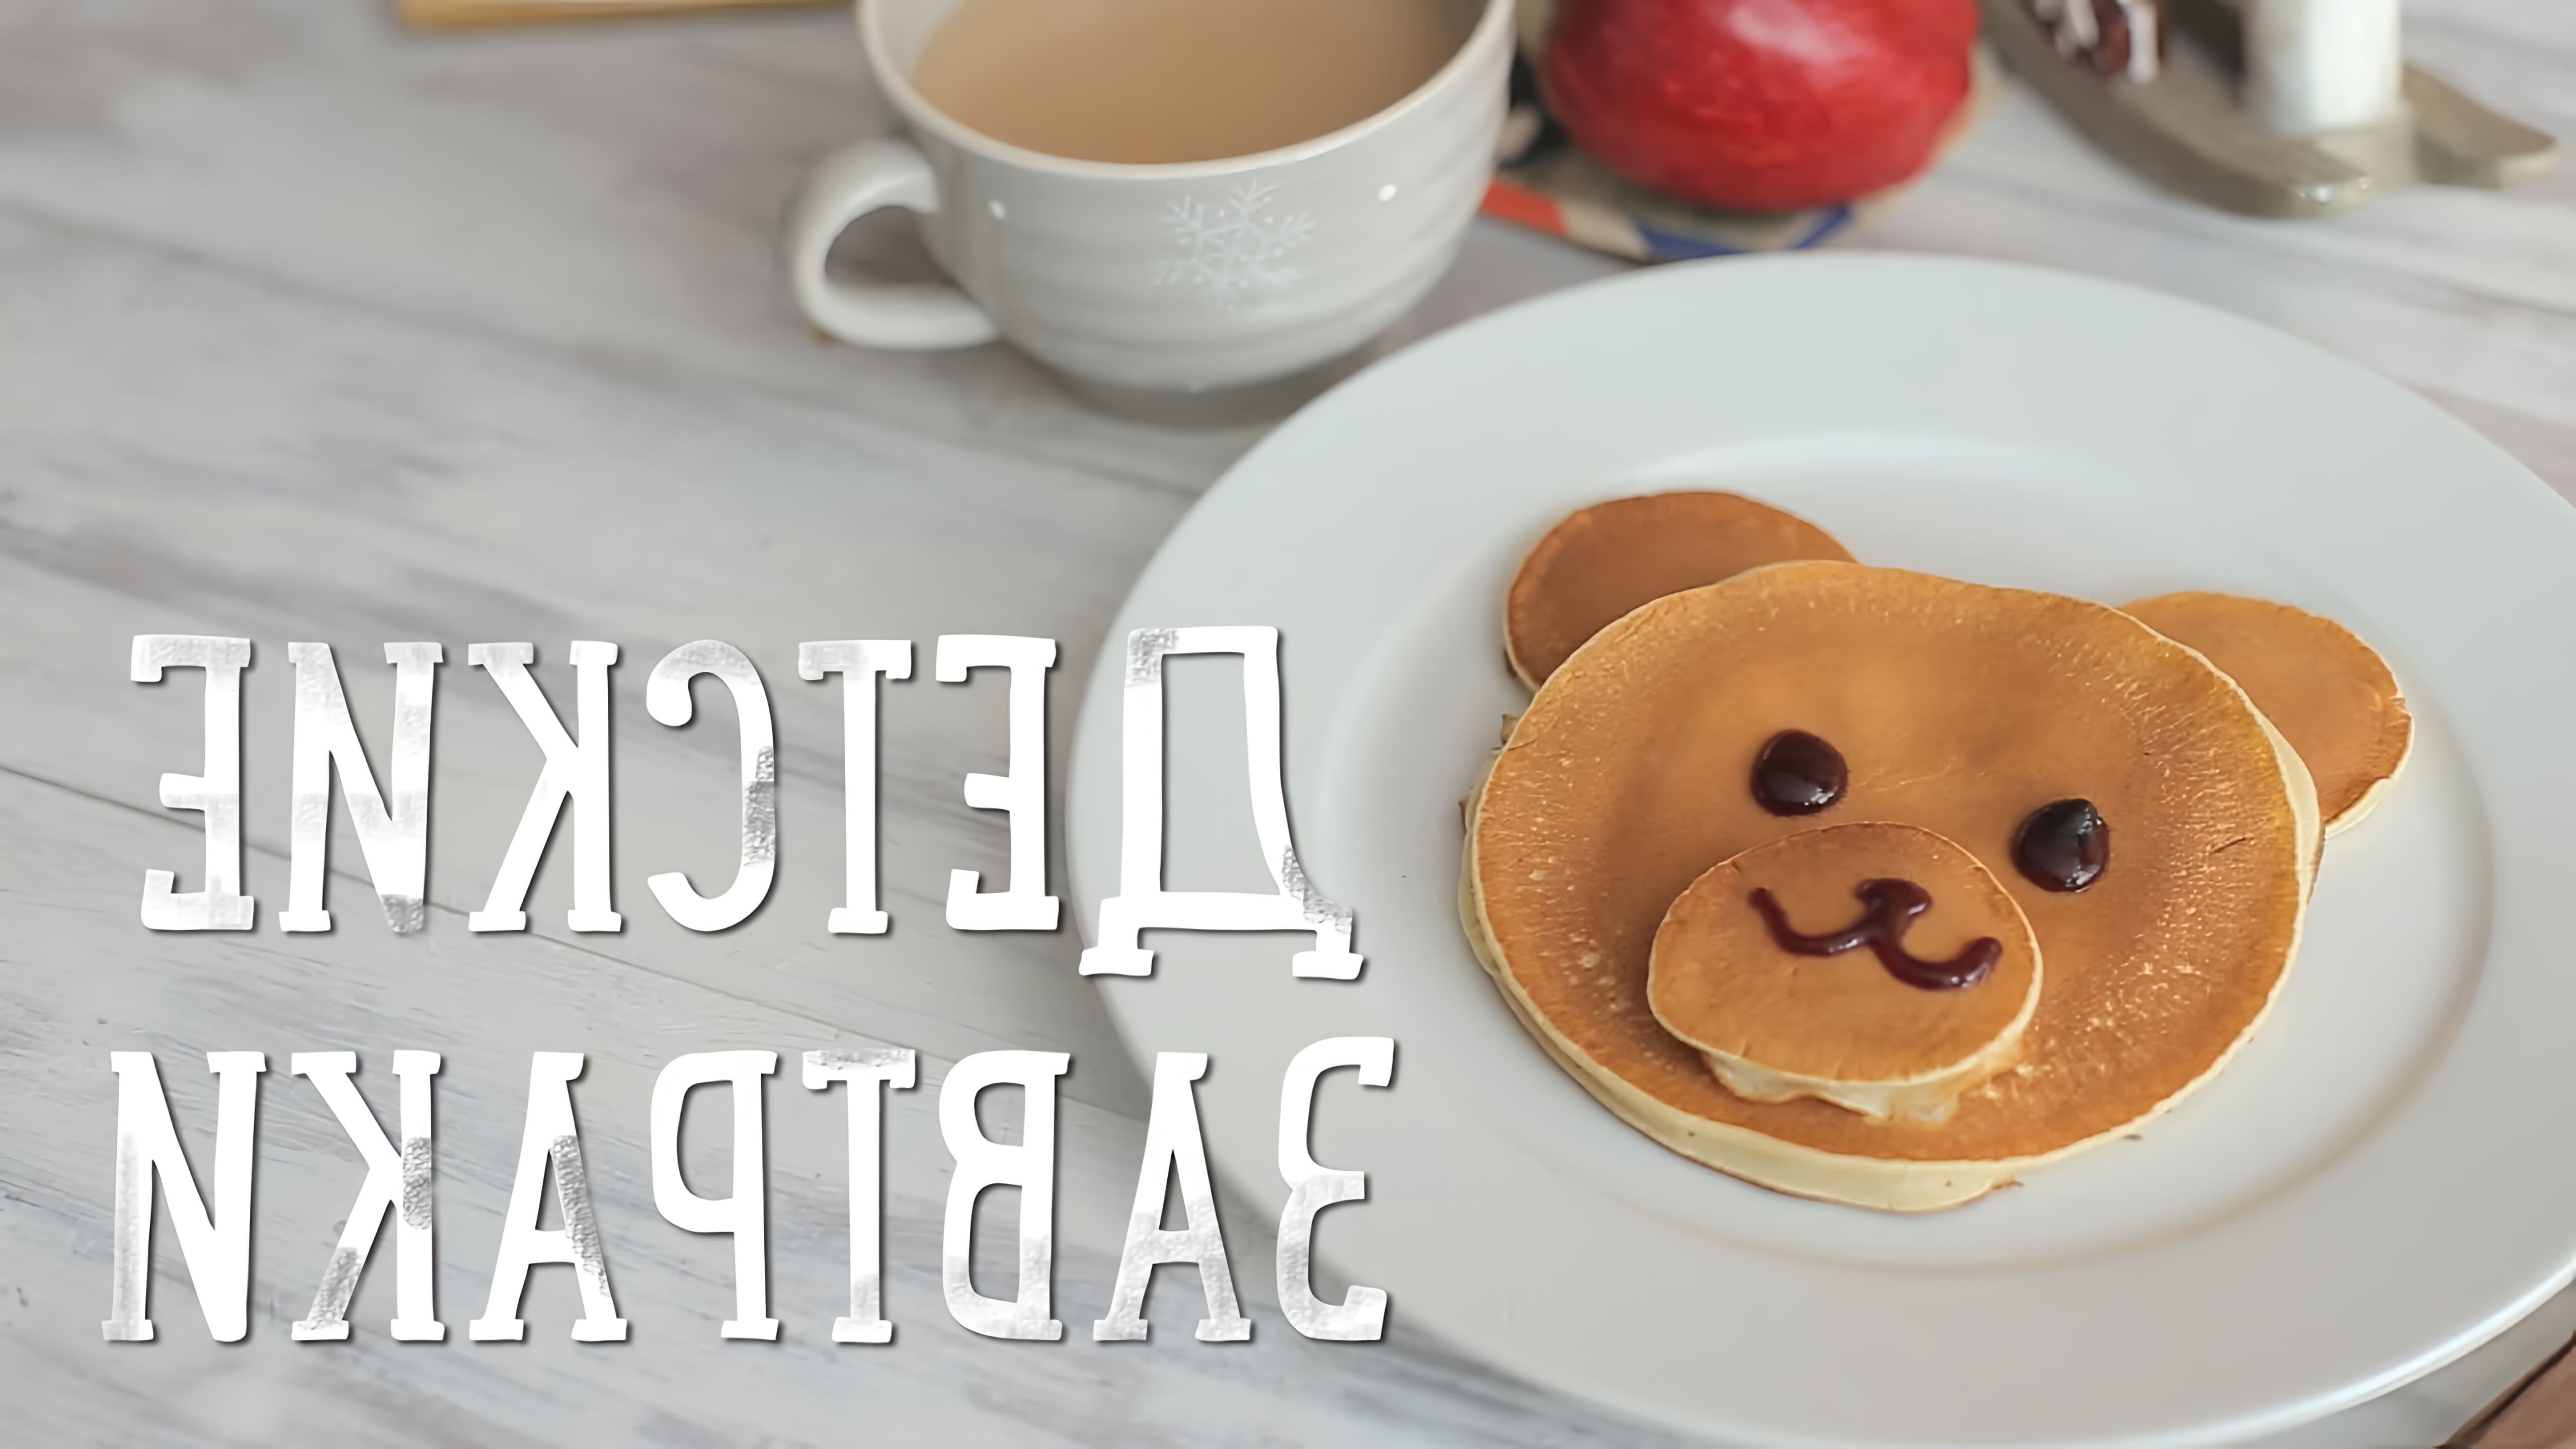 В этом видео рассказывается о трех рецептах детских завтраков, которые могут быть сытными и полезными